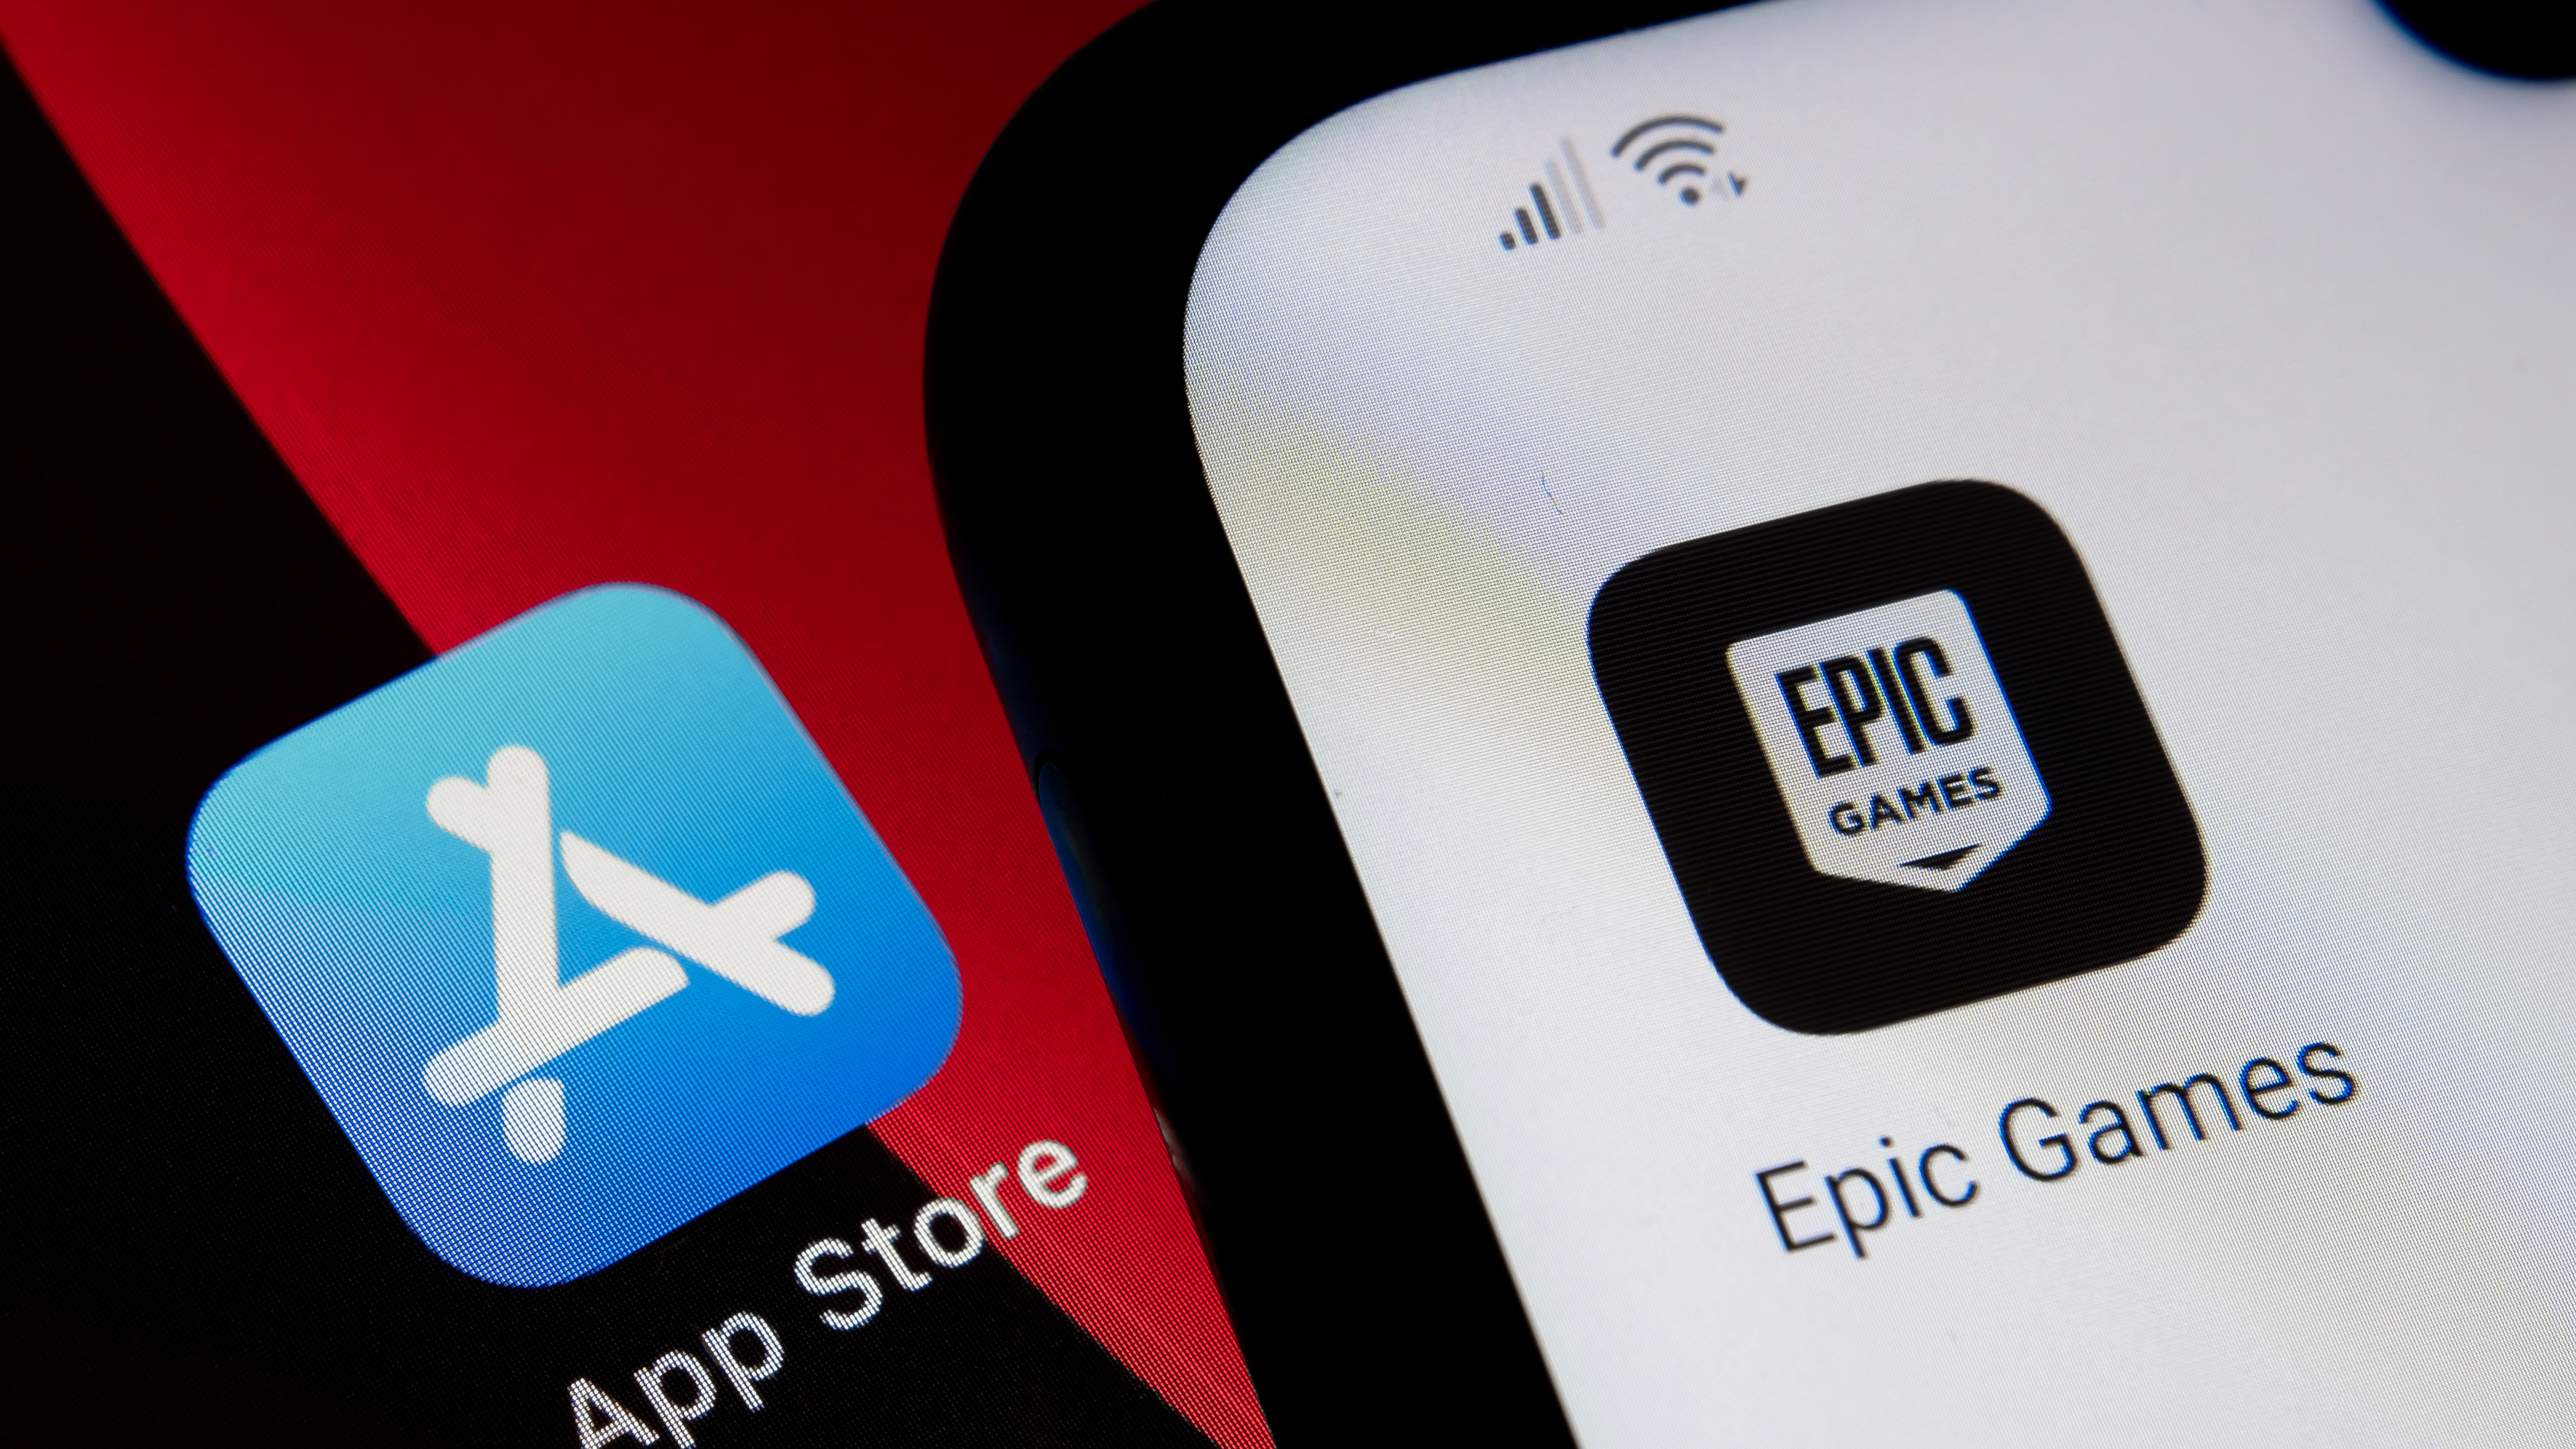 App Store 対 Epic Games。 コンセプト。 iPad では App Store アイコンが、Android スマートフォンでは Epic Games Fortnight アイコンが表示されます。 選択と集中。 英国スタッフォード、2021 年 5 月 2 日。